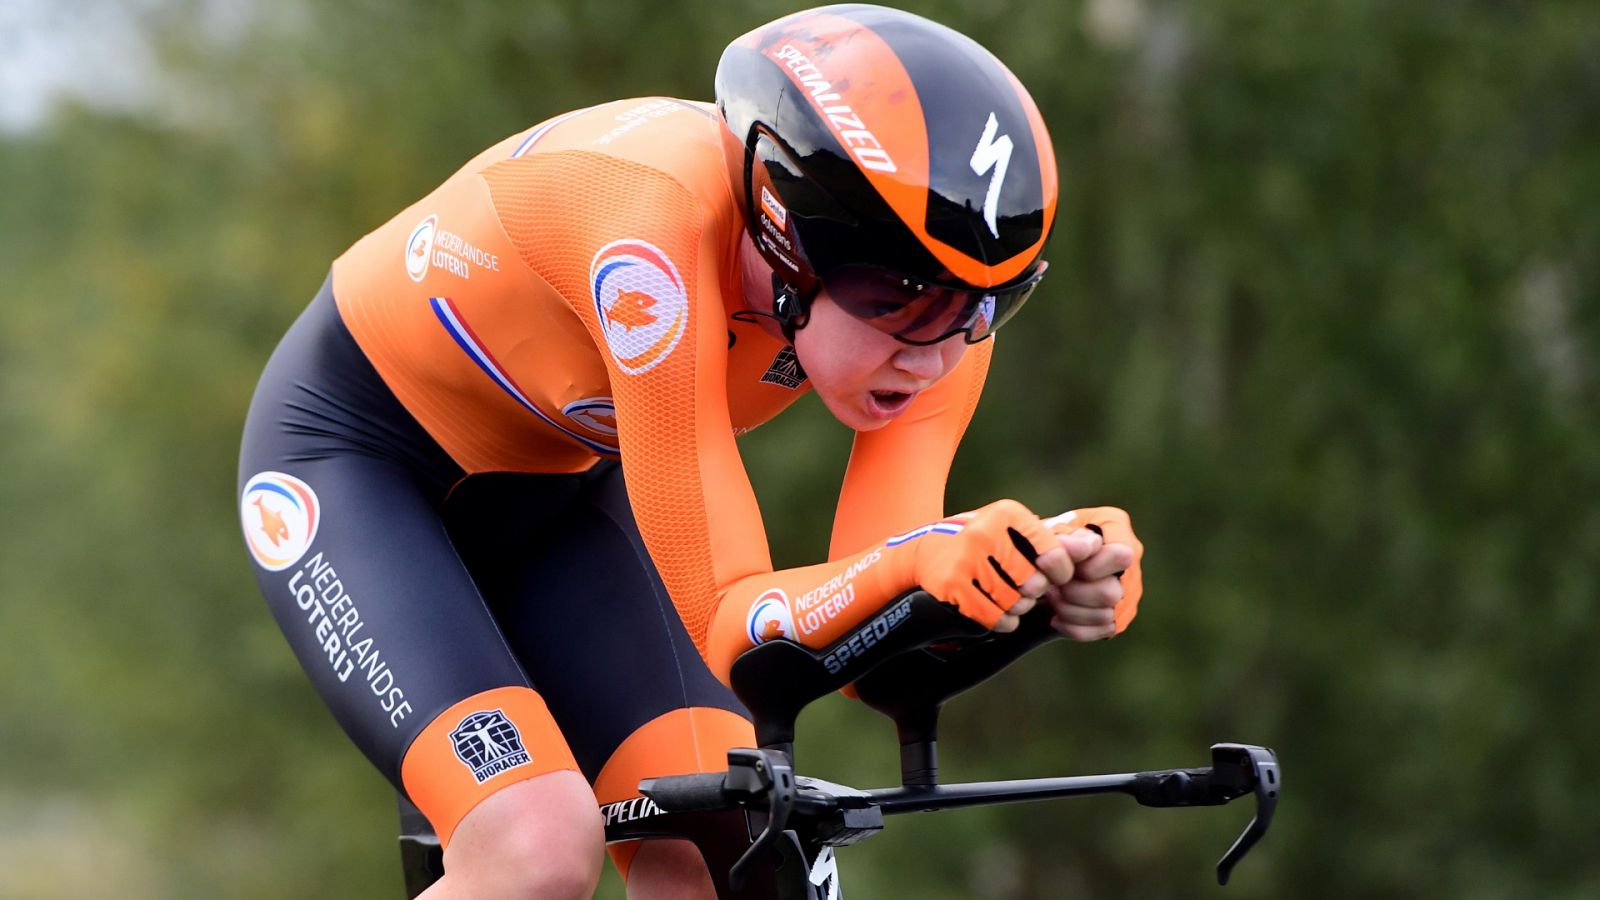 Mundiales de Ciclismo 2020 | Van Der Breggen marca el mejor tiempo en la crono femenina